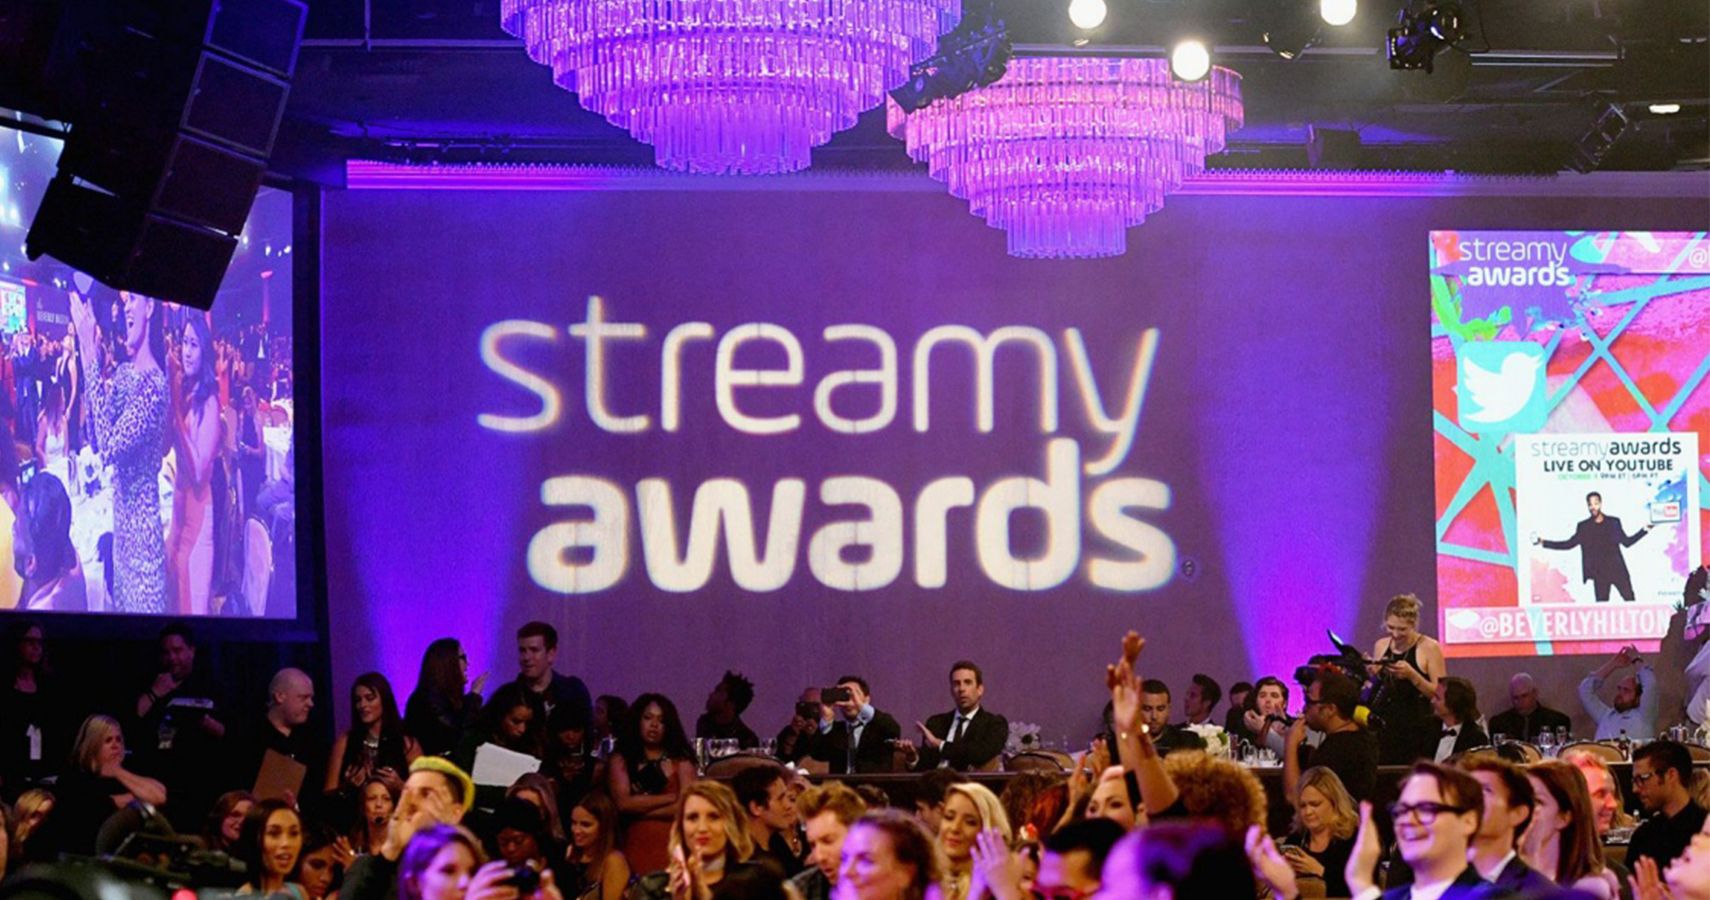 Streamy Awards 2019 Nominees